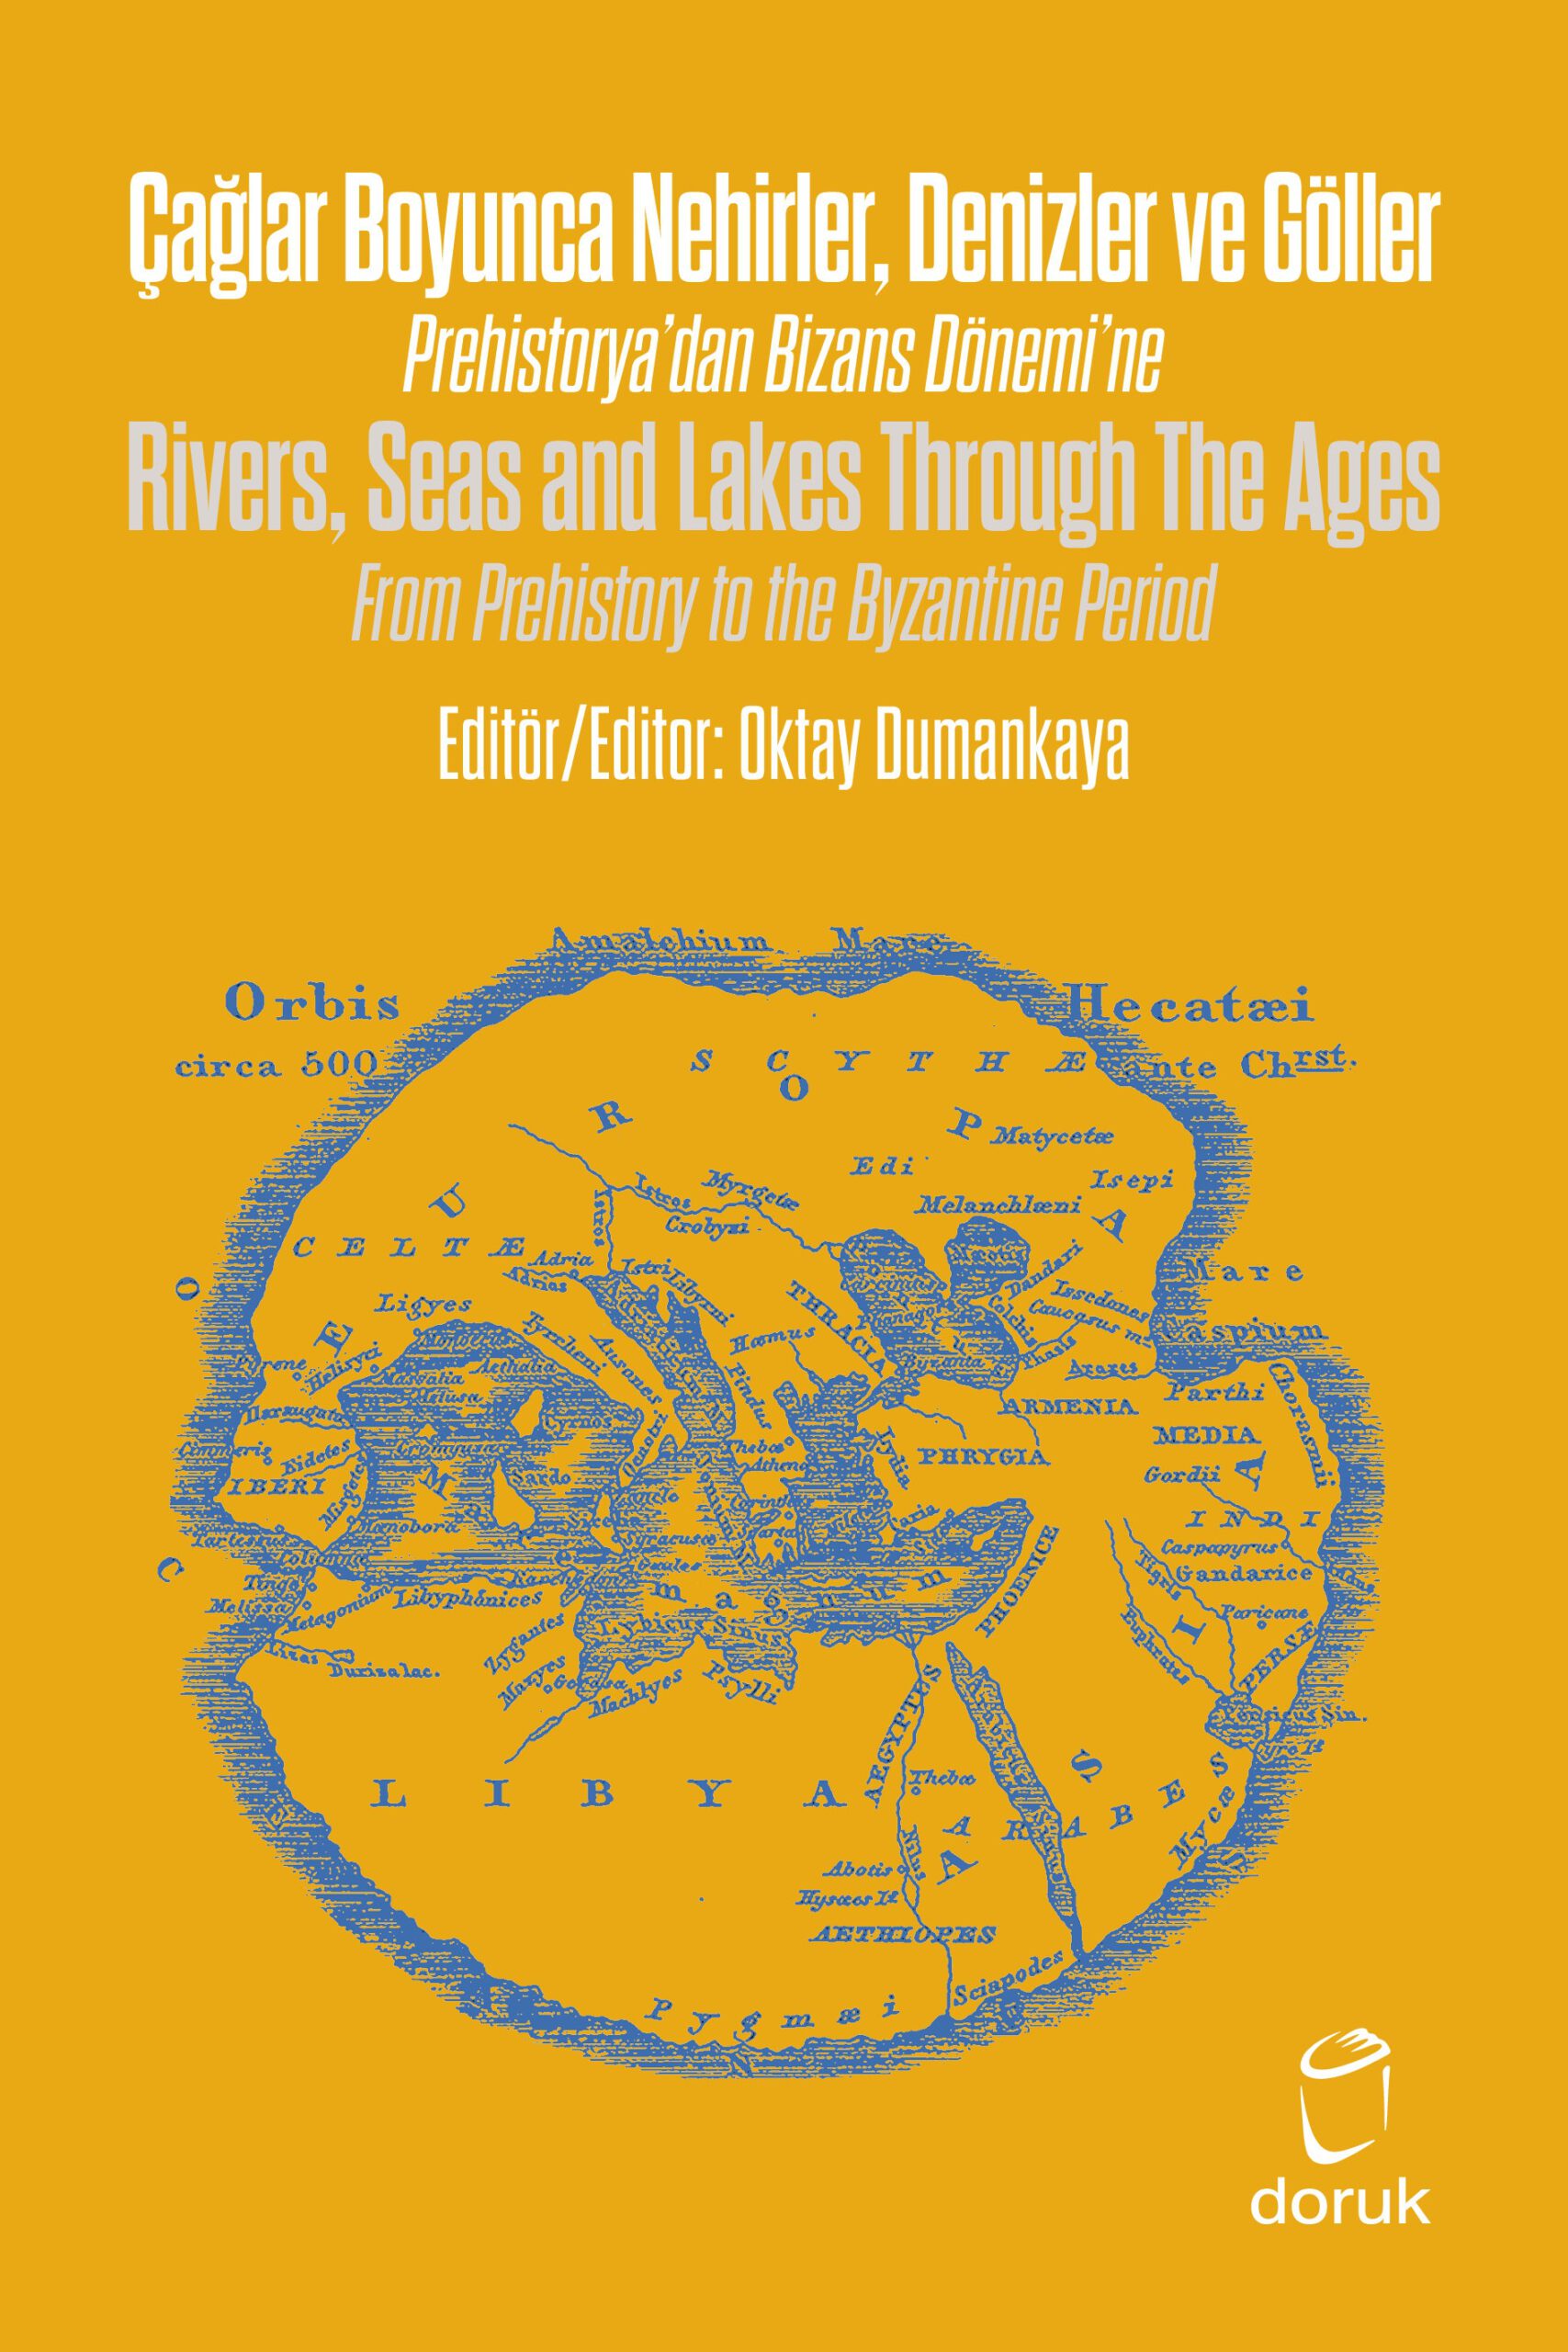 Çağlar Boyunca Nehirler Denizler ve Göller -Rivers, Seas and Lakes Through The Ages